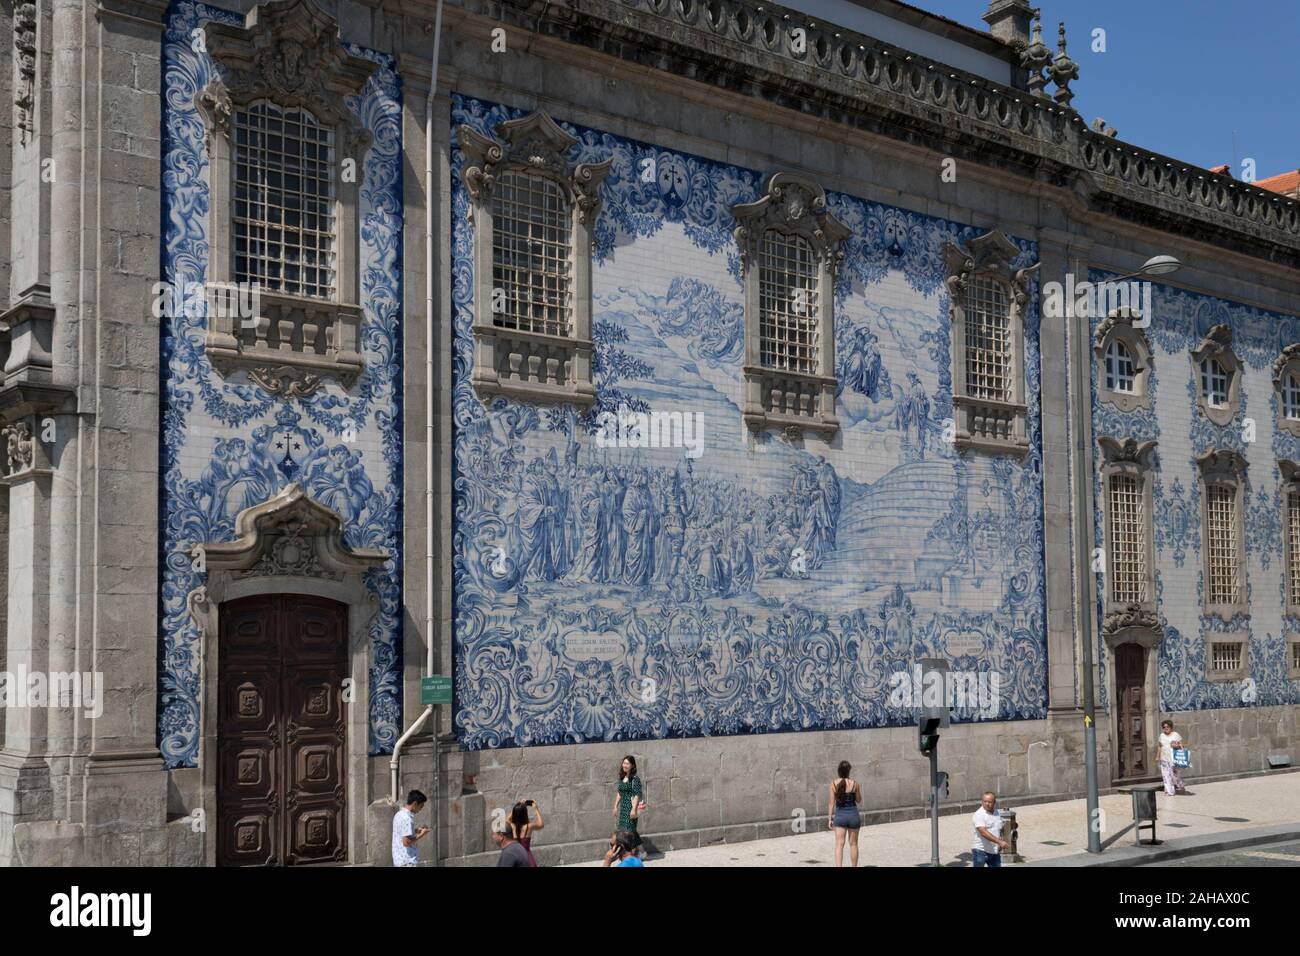 Porto, Portugal - 21/08/2019 Colorful exterior mosaic of Capela das Almas Stock Photo